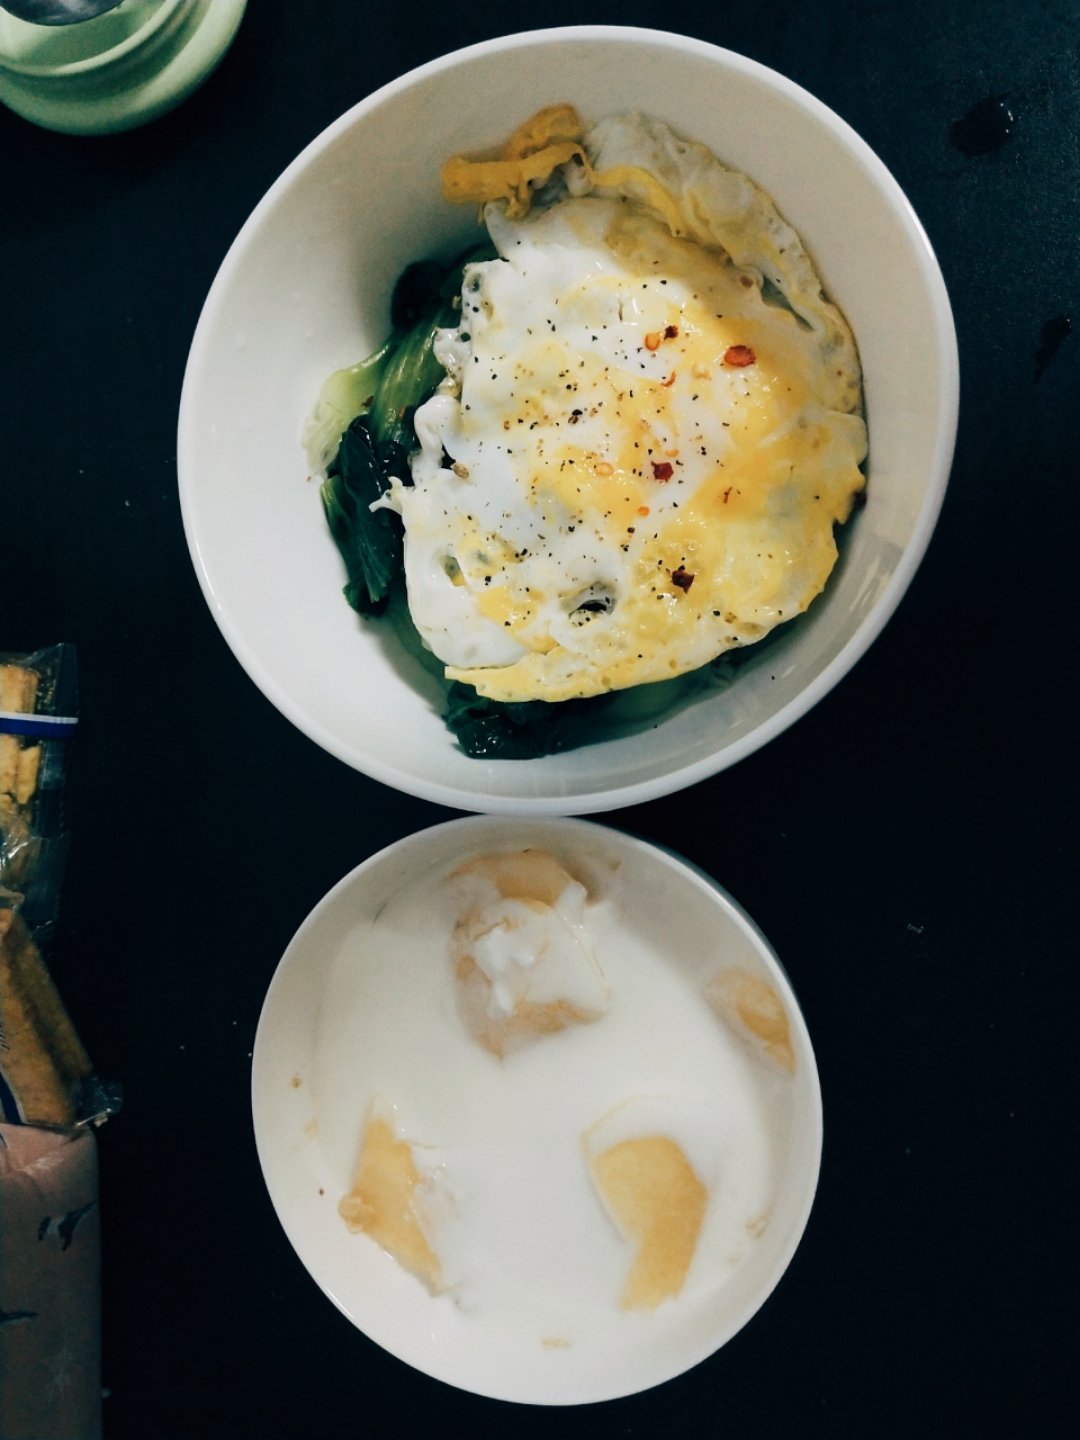 超简单的营养早餐--酸奶麦片